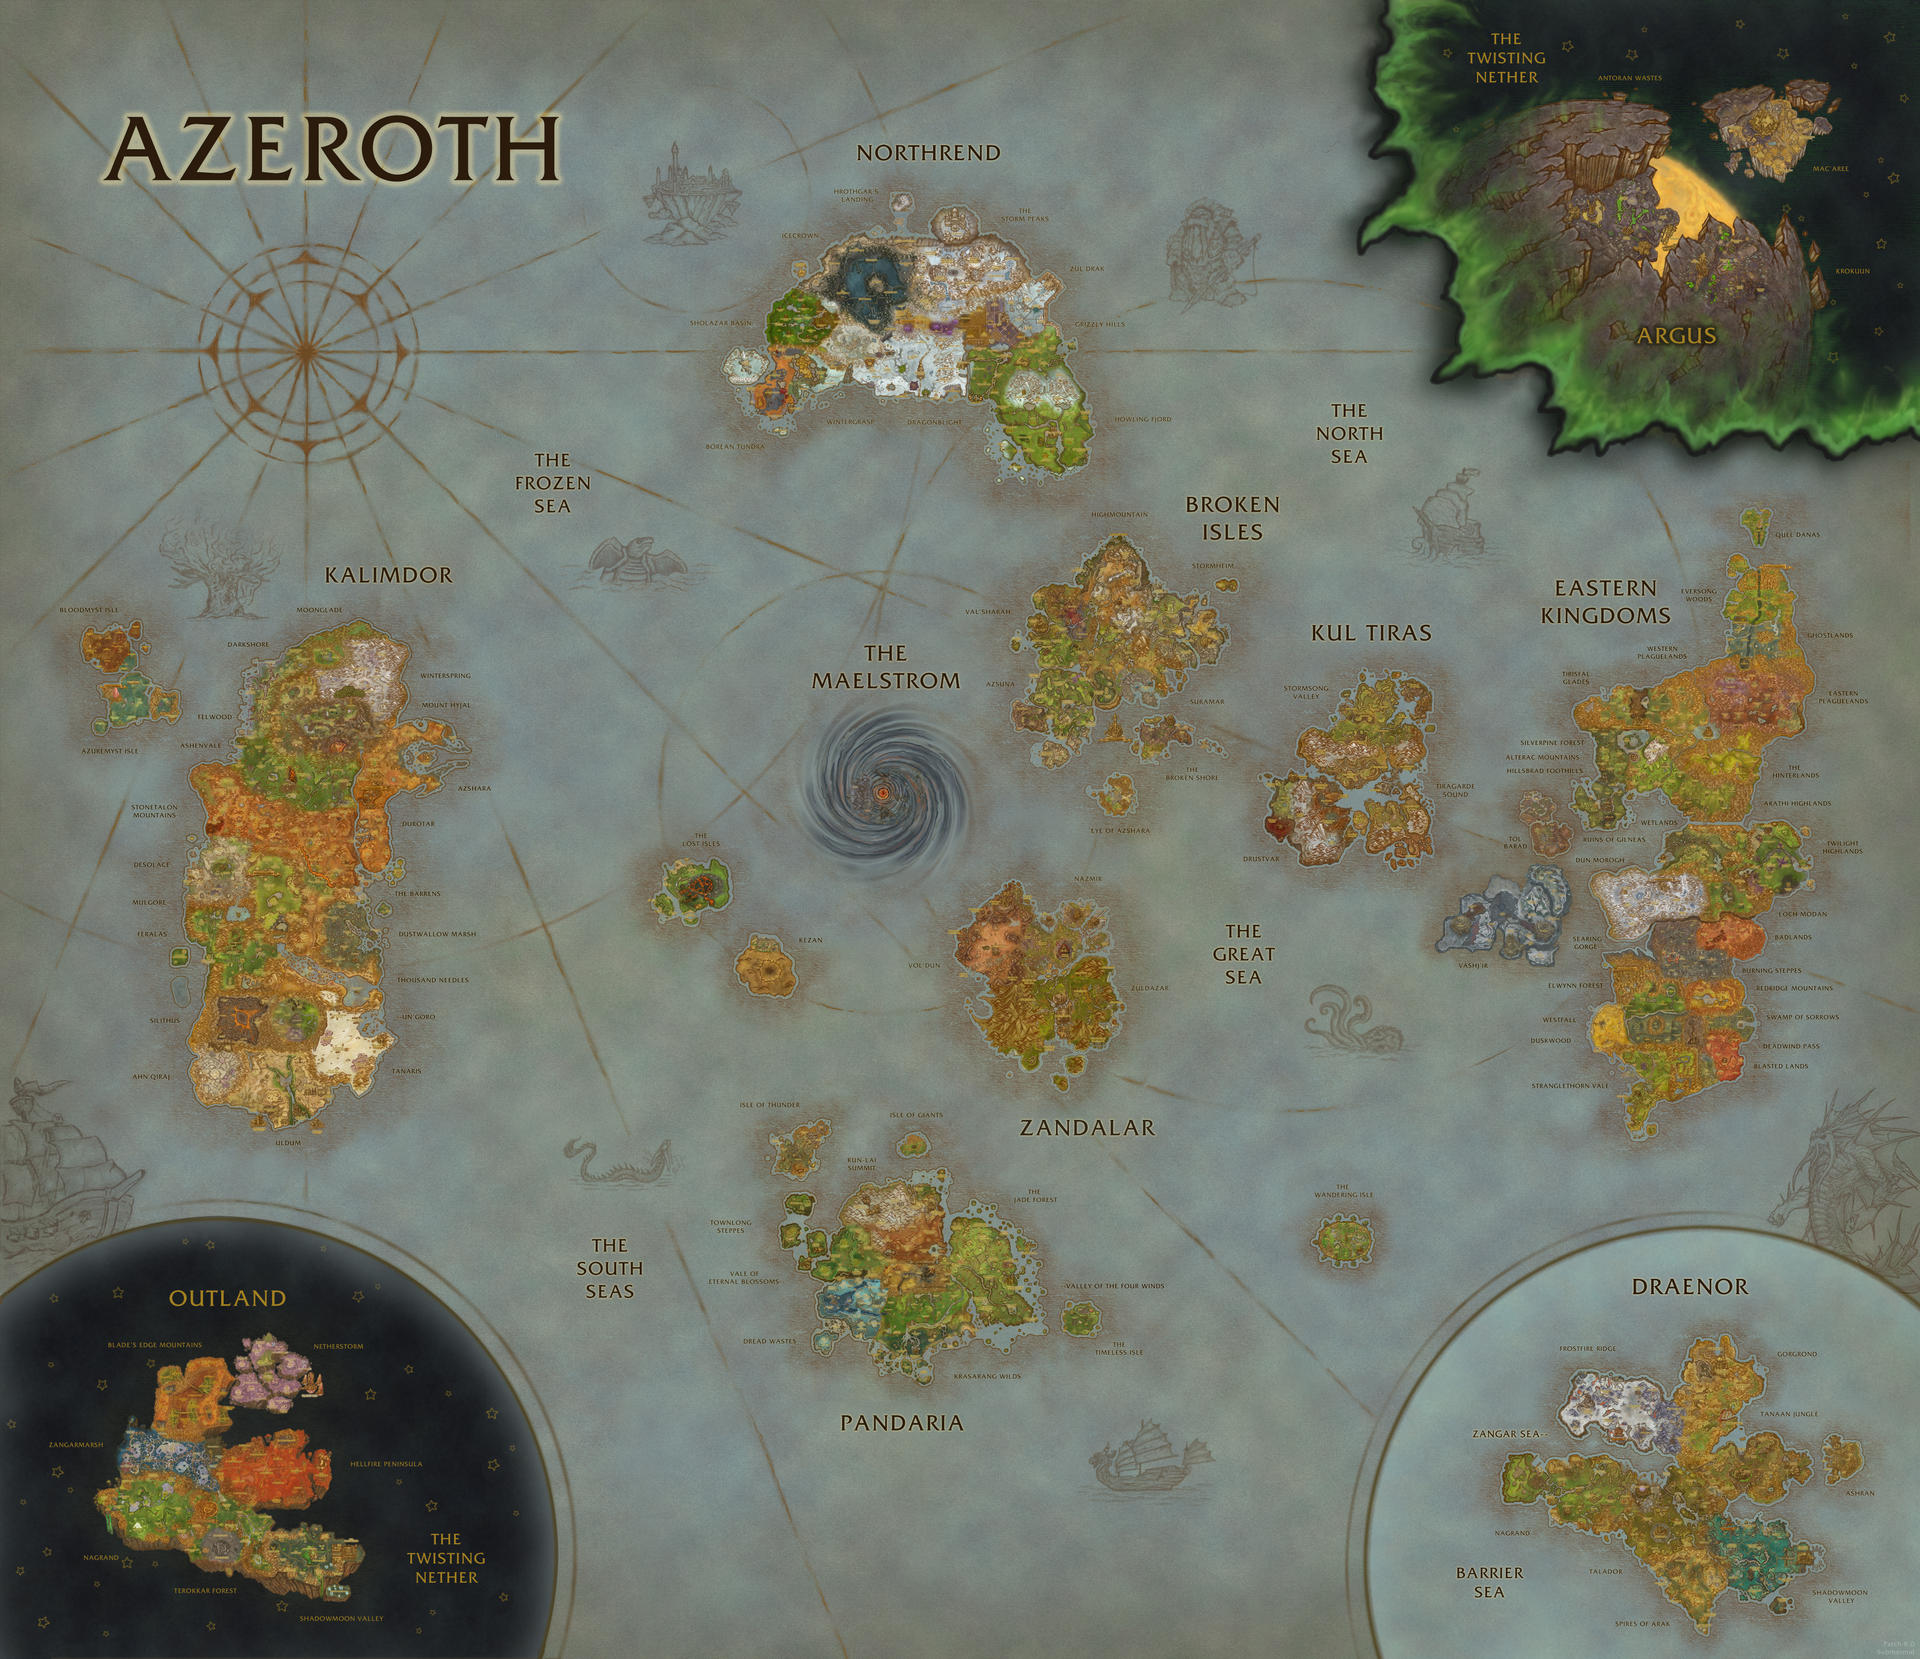 World Of Warcraft Map Composition  Bfa Update  By Sub Thermal Dci2y2d Fullview ?token=eyJ0eXAiOiJKV1QiLCJhbGciOiJIUzI1NiJ9.eyJzdWIiOiJ1cm46YXBwOjdlMGQxODg5ODIyNjQzNzNhNWYwZDQxNWVhMGQyNmUwIiwiaXNzIjoidXJuOmFwcDo3ZTBkMTg4OTgyMjY0MzczYTVmMGQ0MTVlYTBkMjZlMCIsIm9iaiI6W1t7ImhlaWdodCI6Ijw9MTY1OSIsInBhdGgiOiJcL2ZcLzc4ODRmNzBhLTZlNzMtNDM3MS05MWJjLTA0MGIxZWI3YzA4OFwvZGNpMnkyZC1hN2ZkZGVhOS03MTk0LTQ4ZWQtYThhMC04YjMzZmFlNzIwN2IuanBnIiwid2lkdGgiOiI8PTE5MjAifV1dLCJhdWQiOlsidXJuOnNlcnZpY2U6aW1hZ2Uub3BlcmF0aW9ucyJdfQ.9jiojZVC6qmqQ4XjSvVLz4LzOqxSOq SRx13e B9iDo